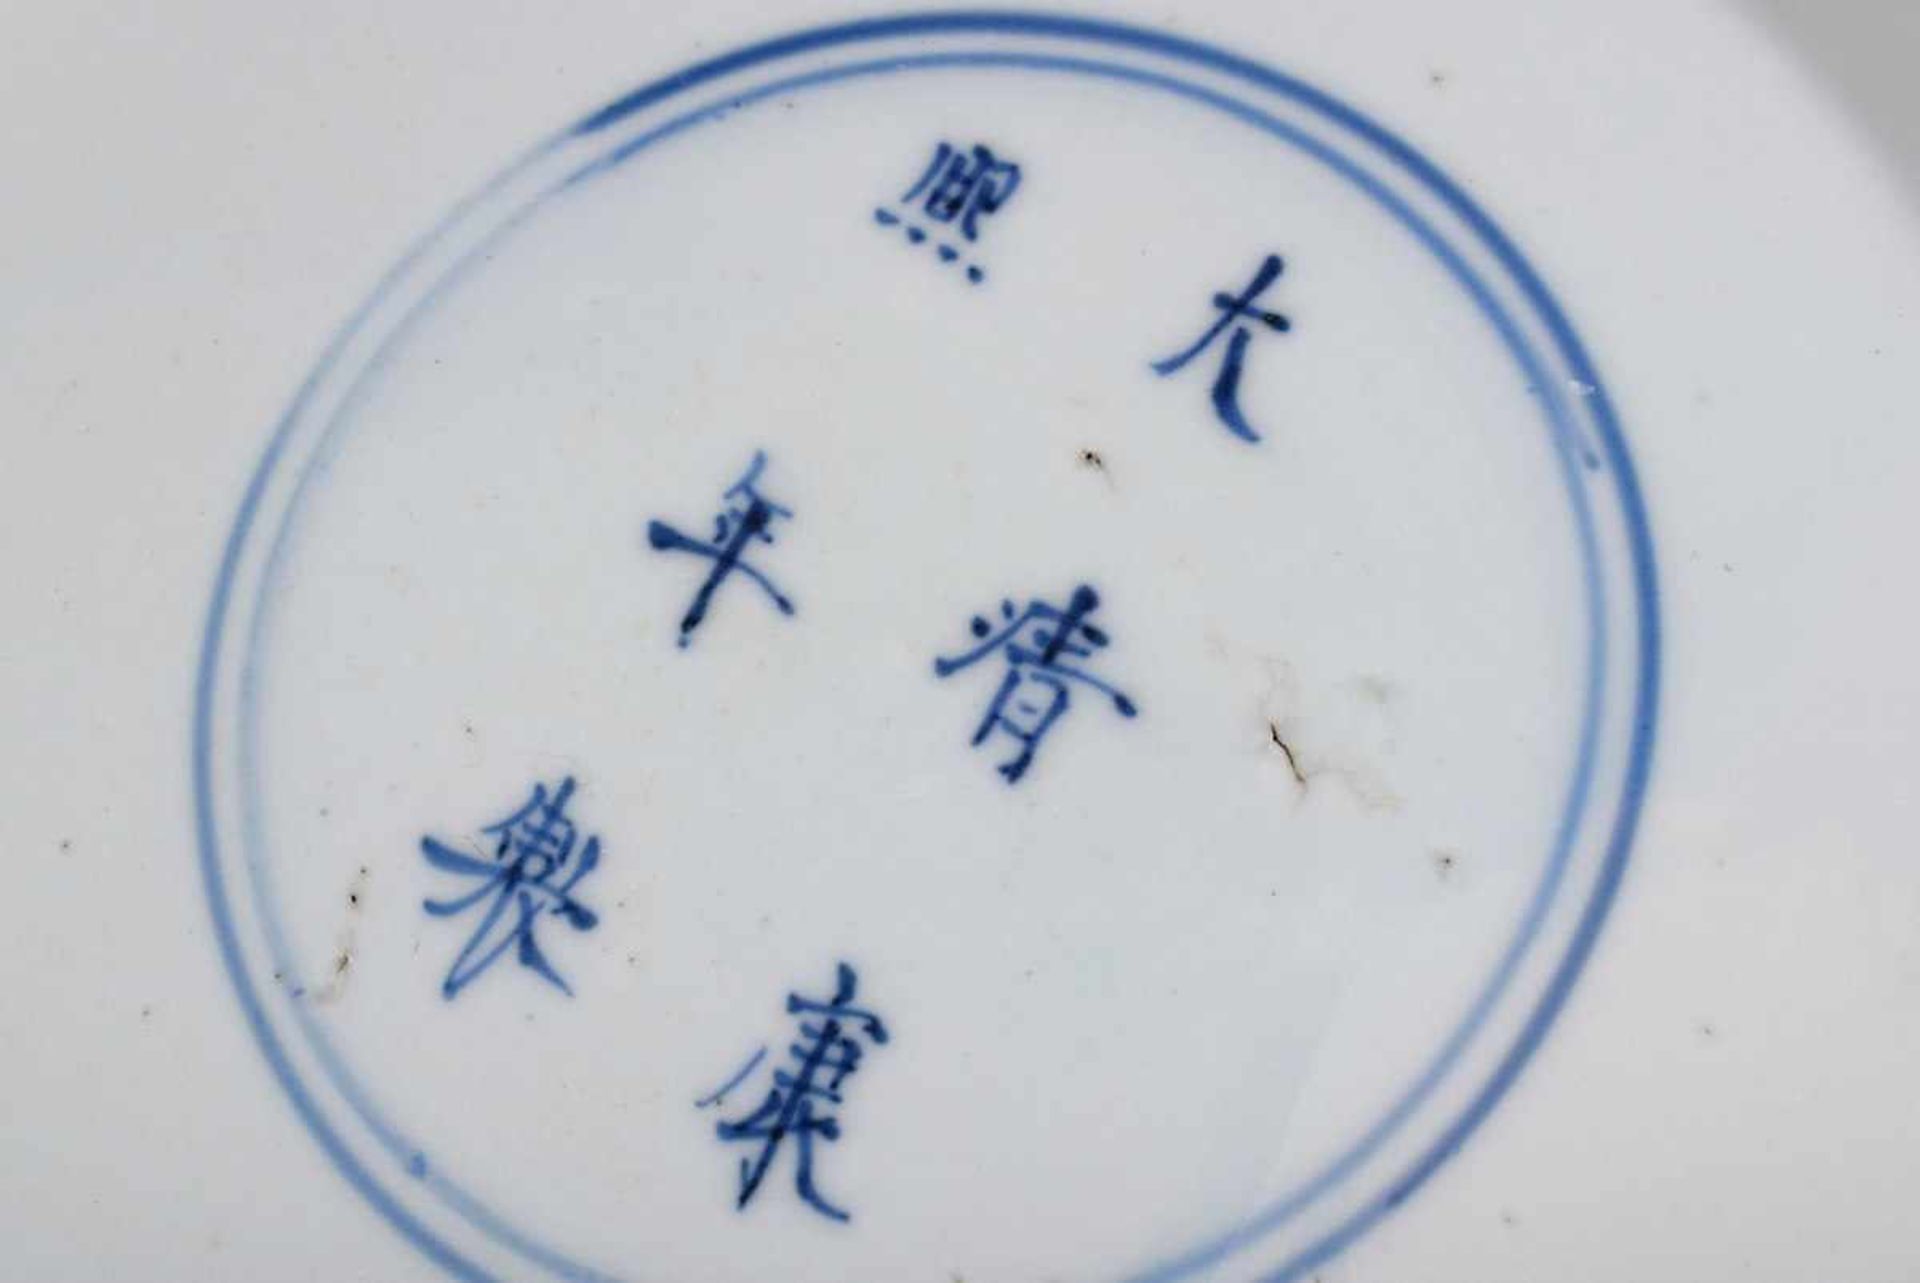 Chinesischer Porzellan Teller mit Blaumalerei Dekor "Päonien und Lingzhi Pilze in floraler Rahmung", - Bild 4 aus 4